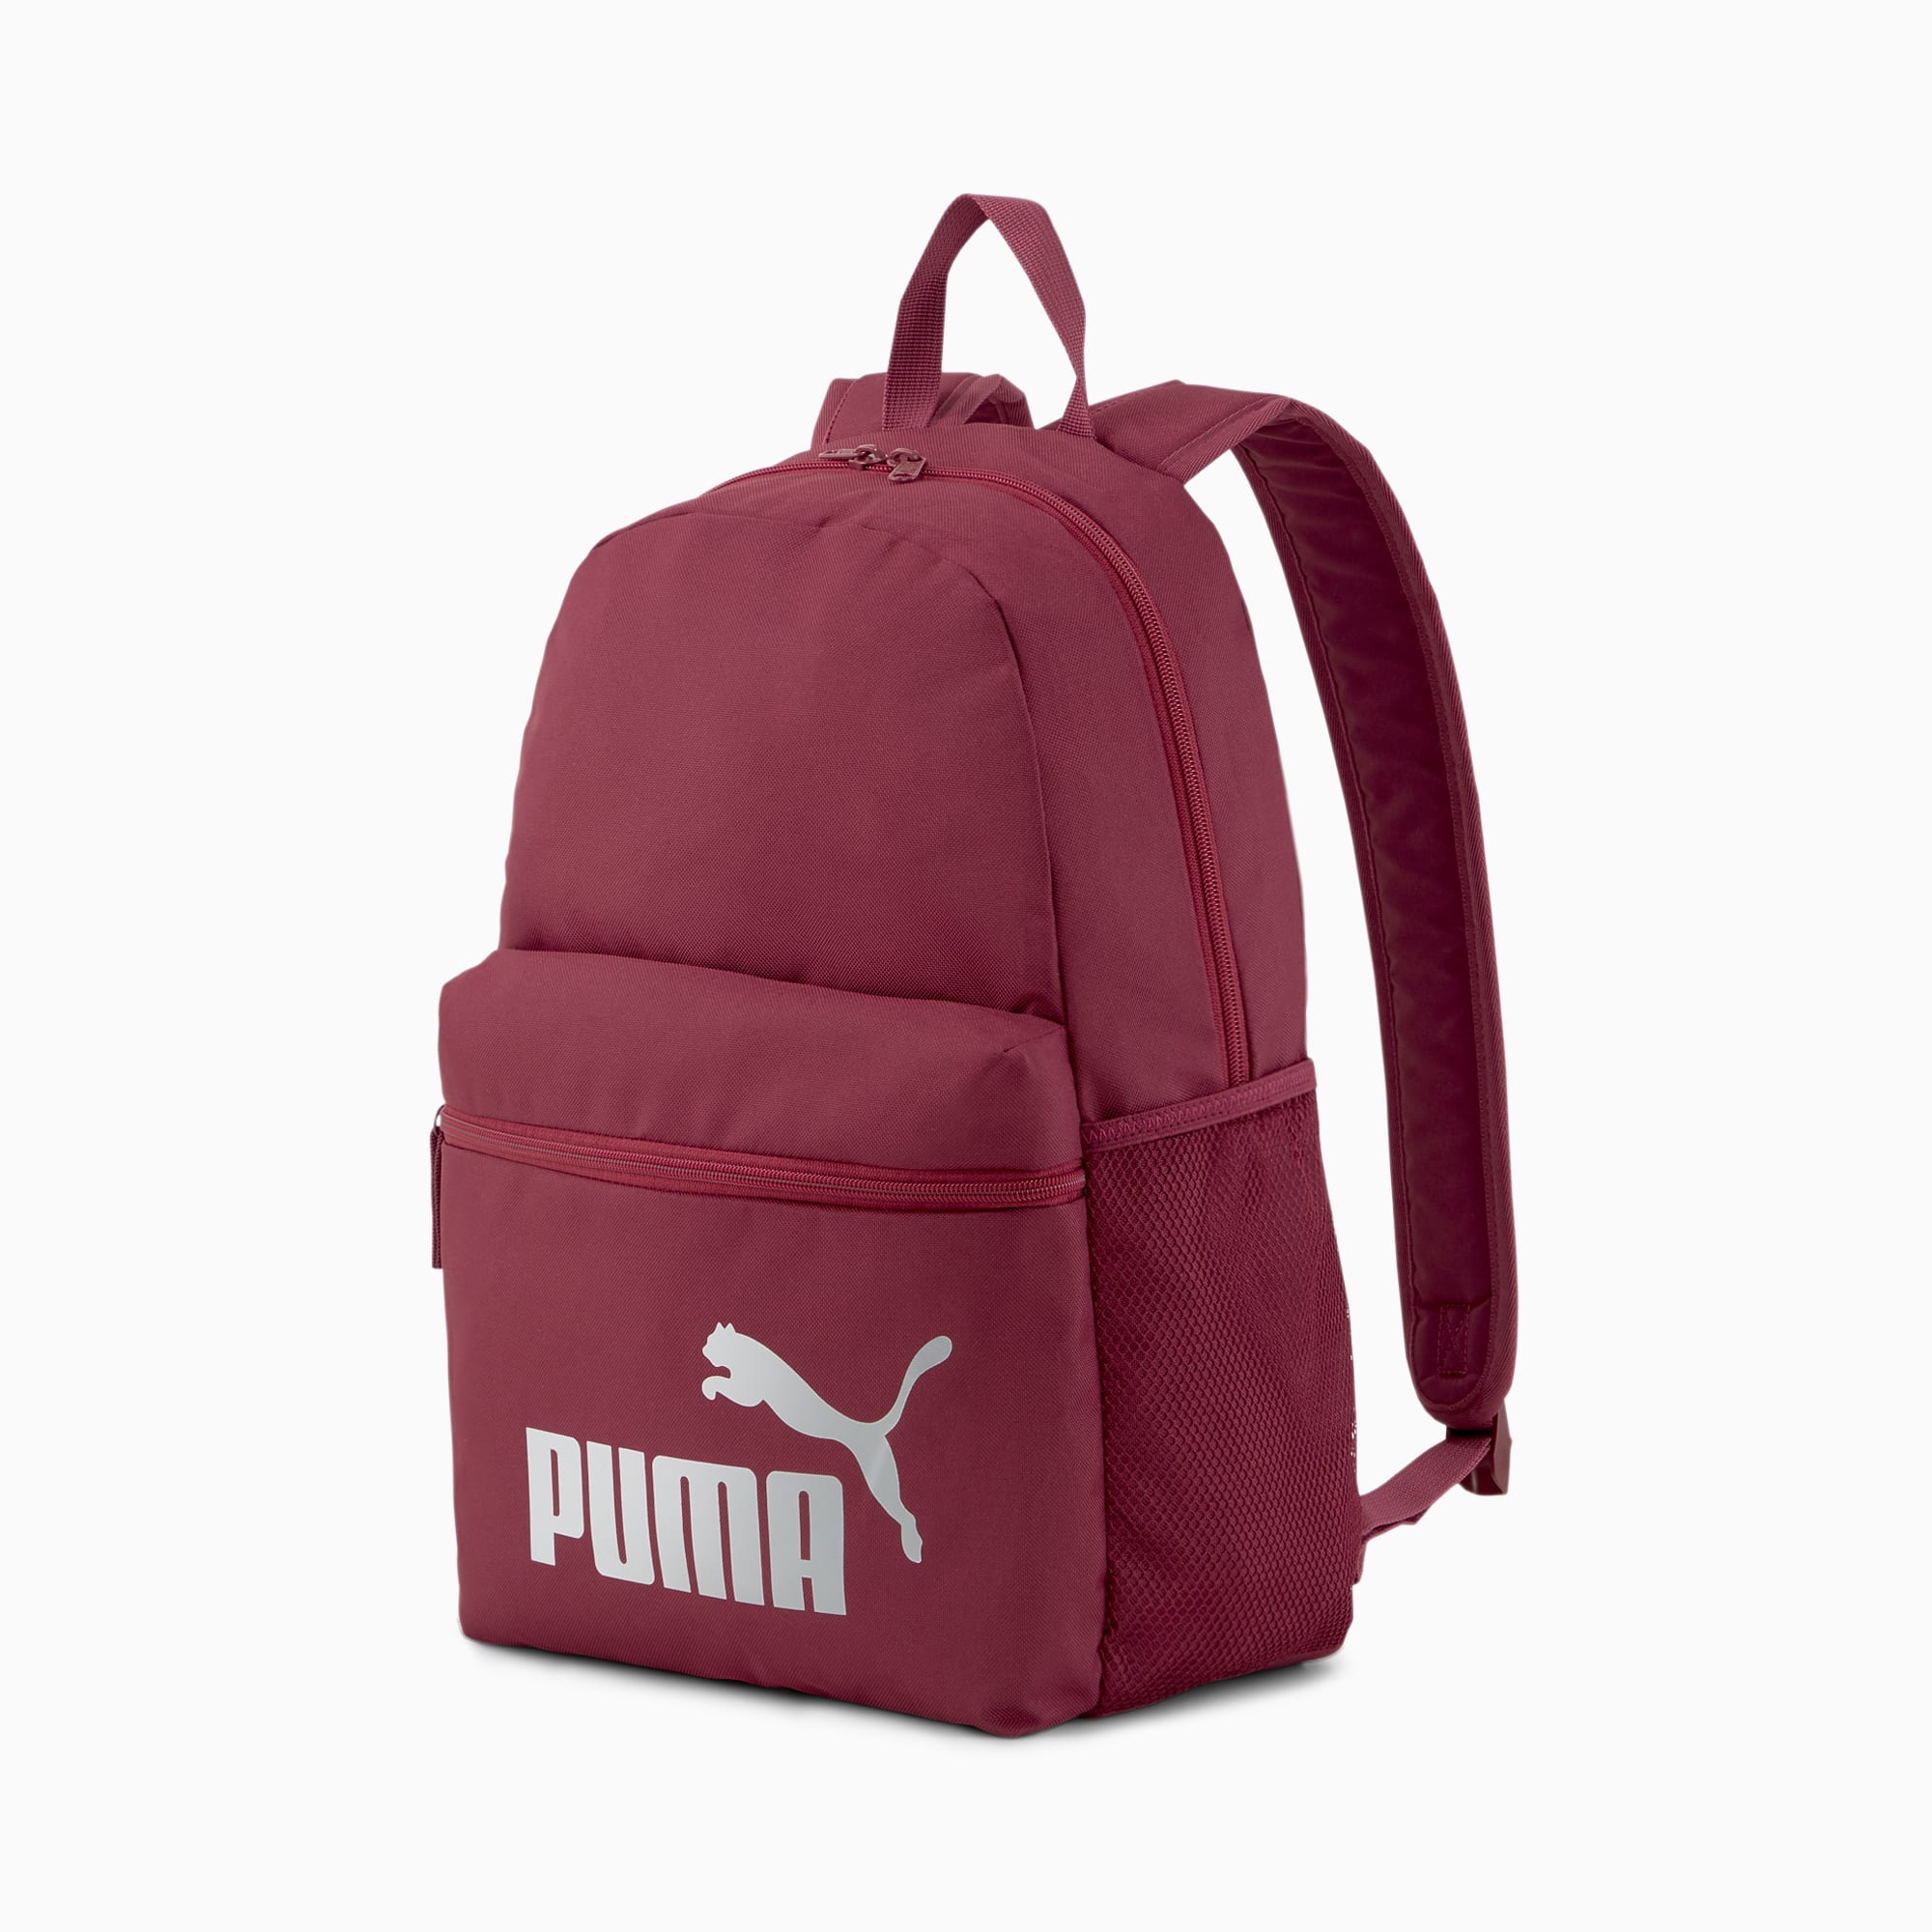 puma silver backpack